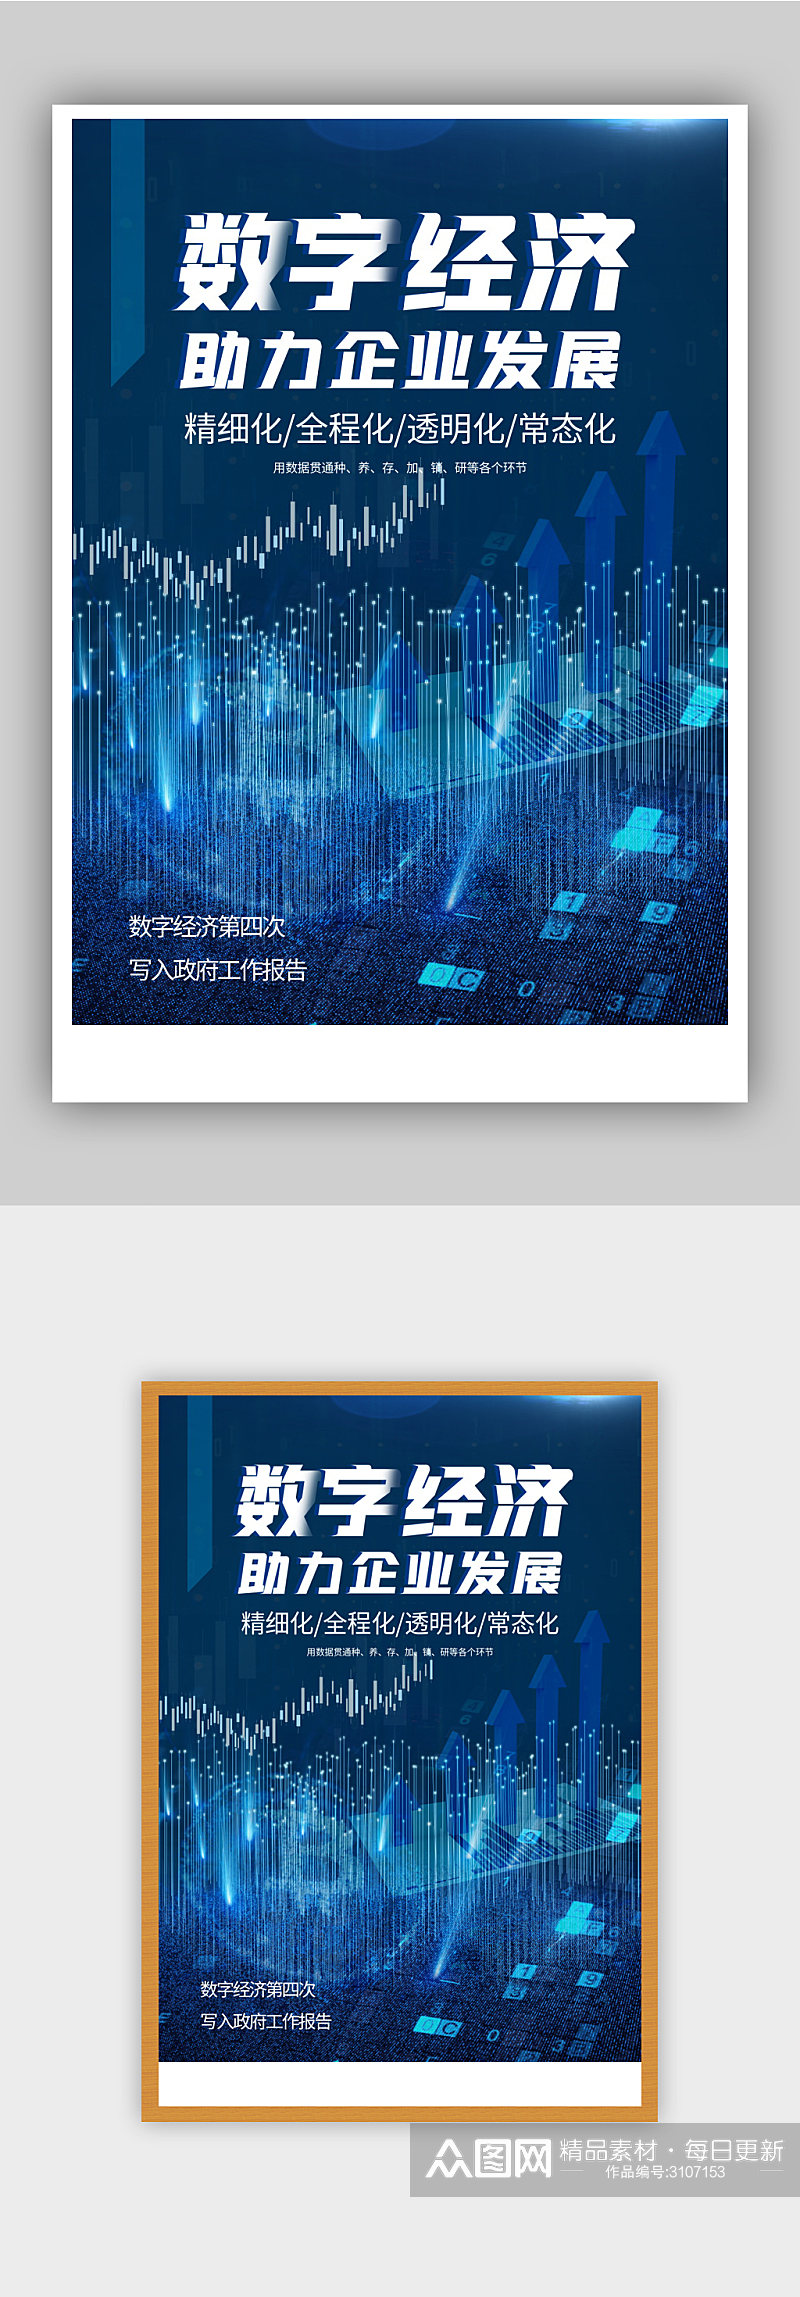 蓝色数字经济科技海报素材